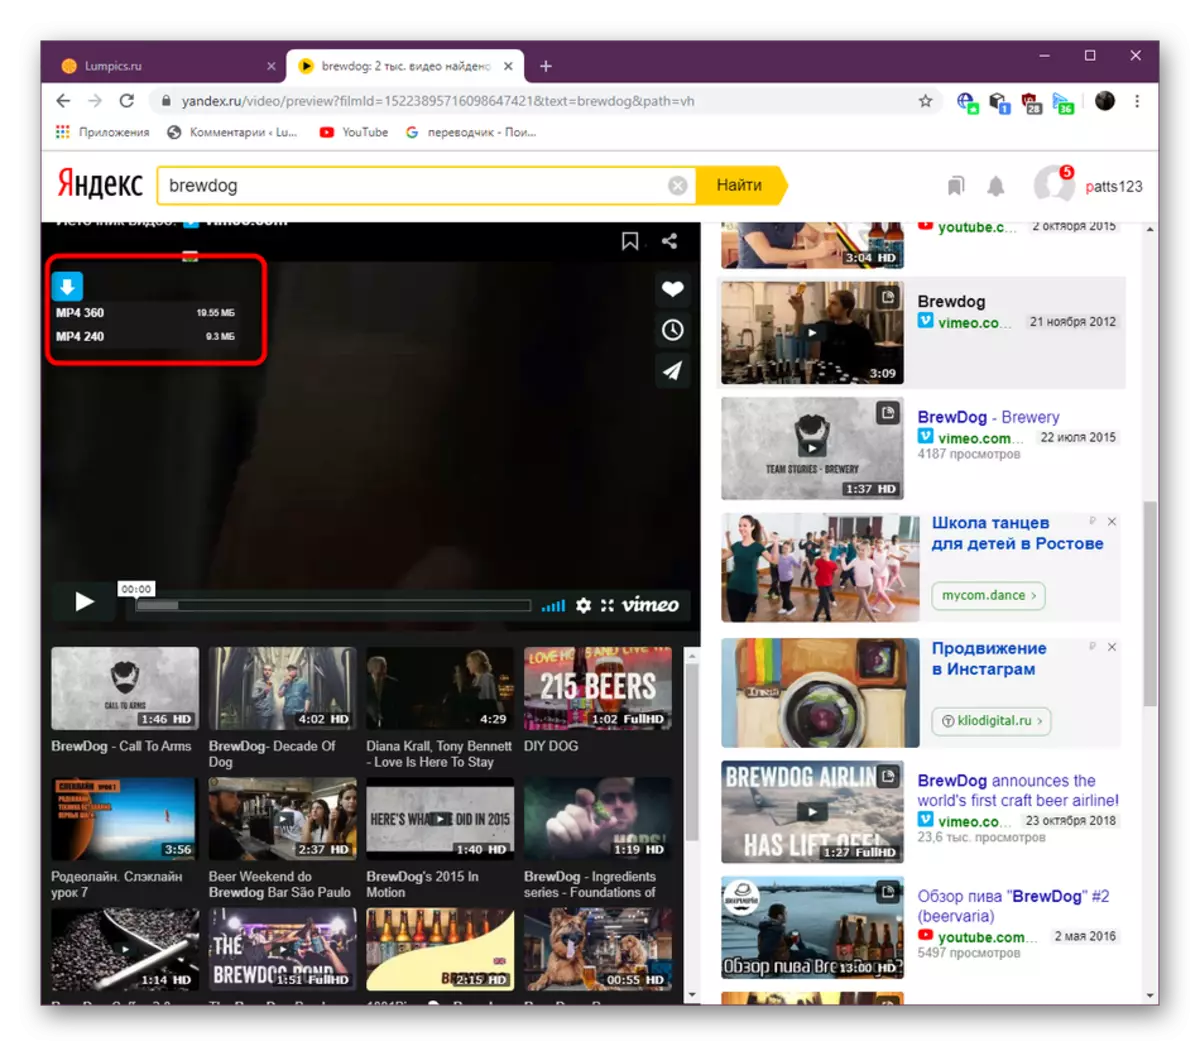 Kifungo cha kupakua video kupitia HifadhiFrom.net katika kutazama mchezaji katika Yandex.Video